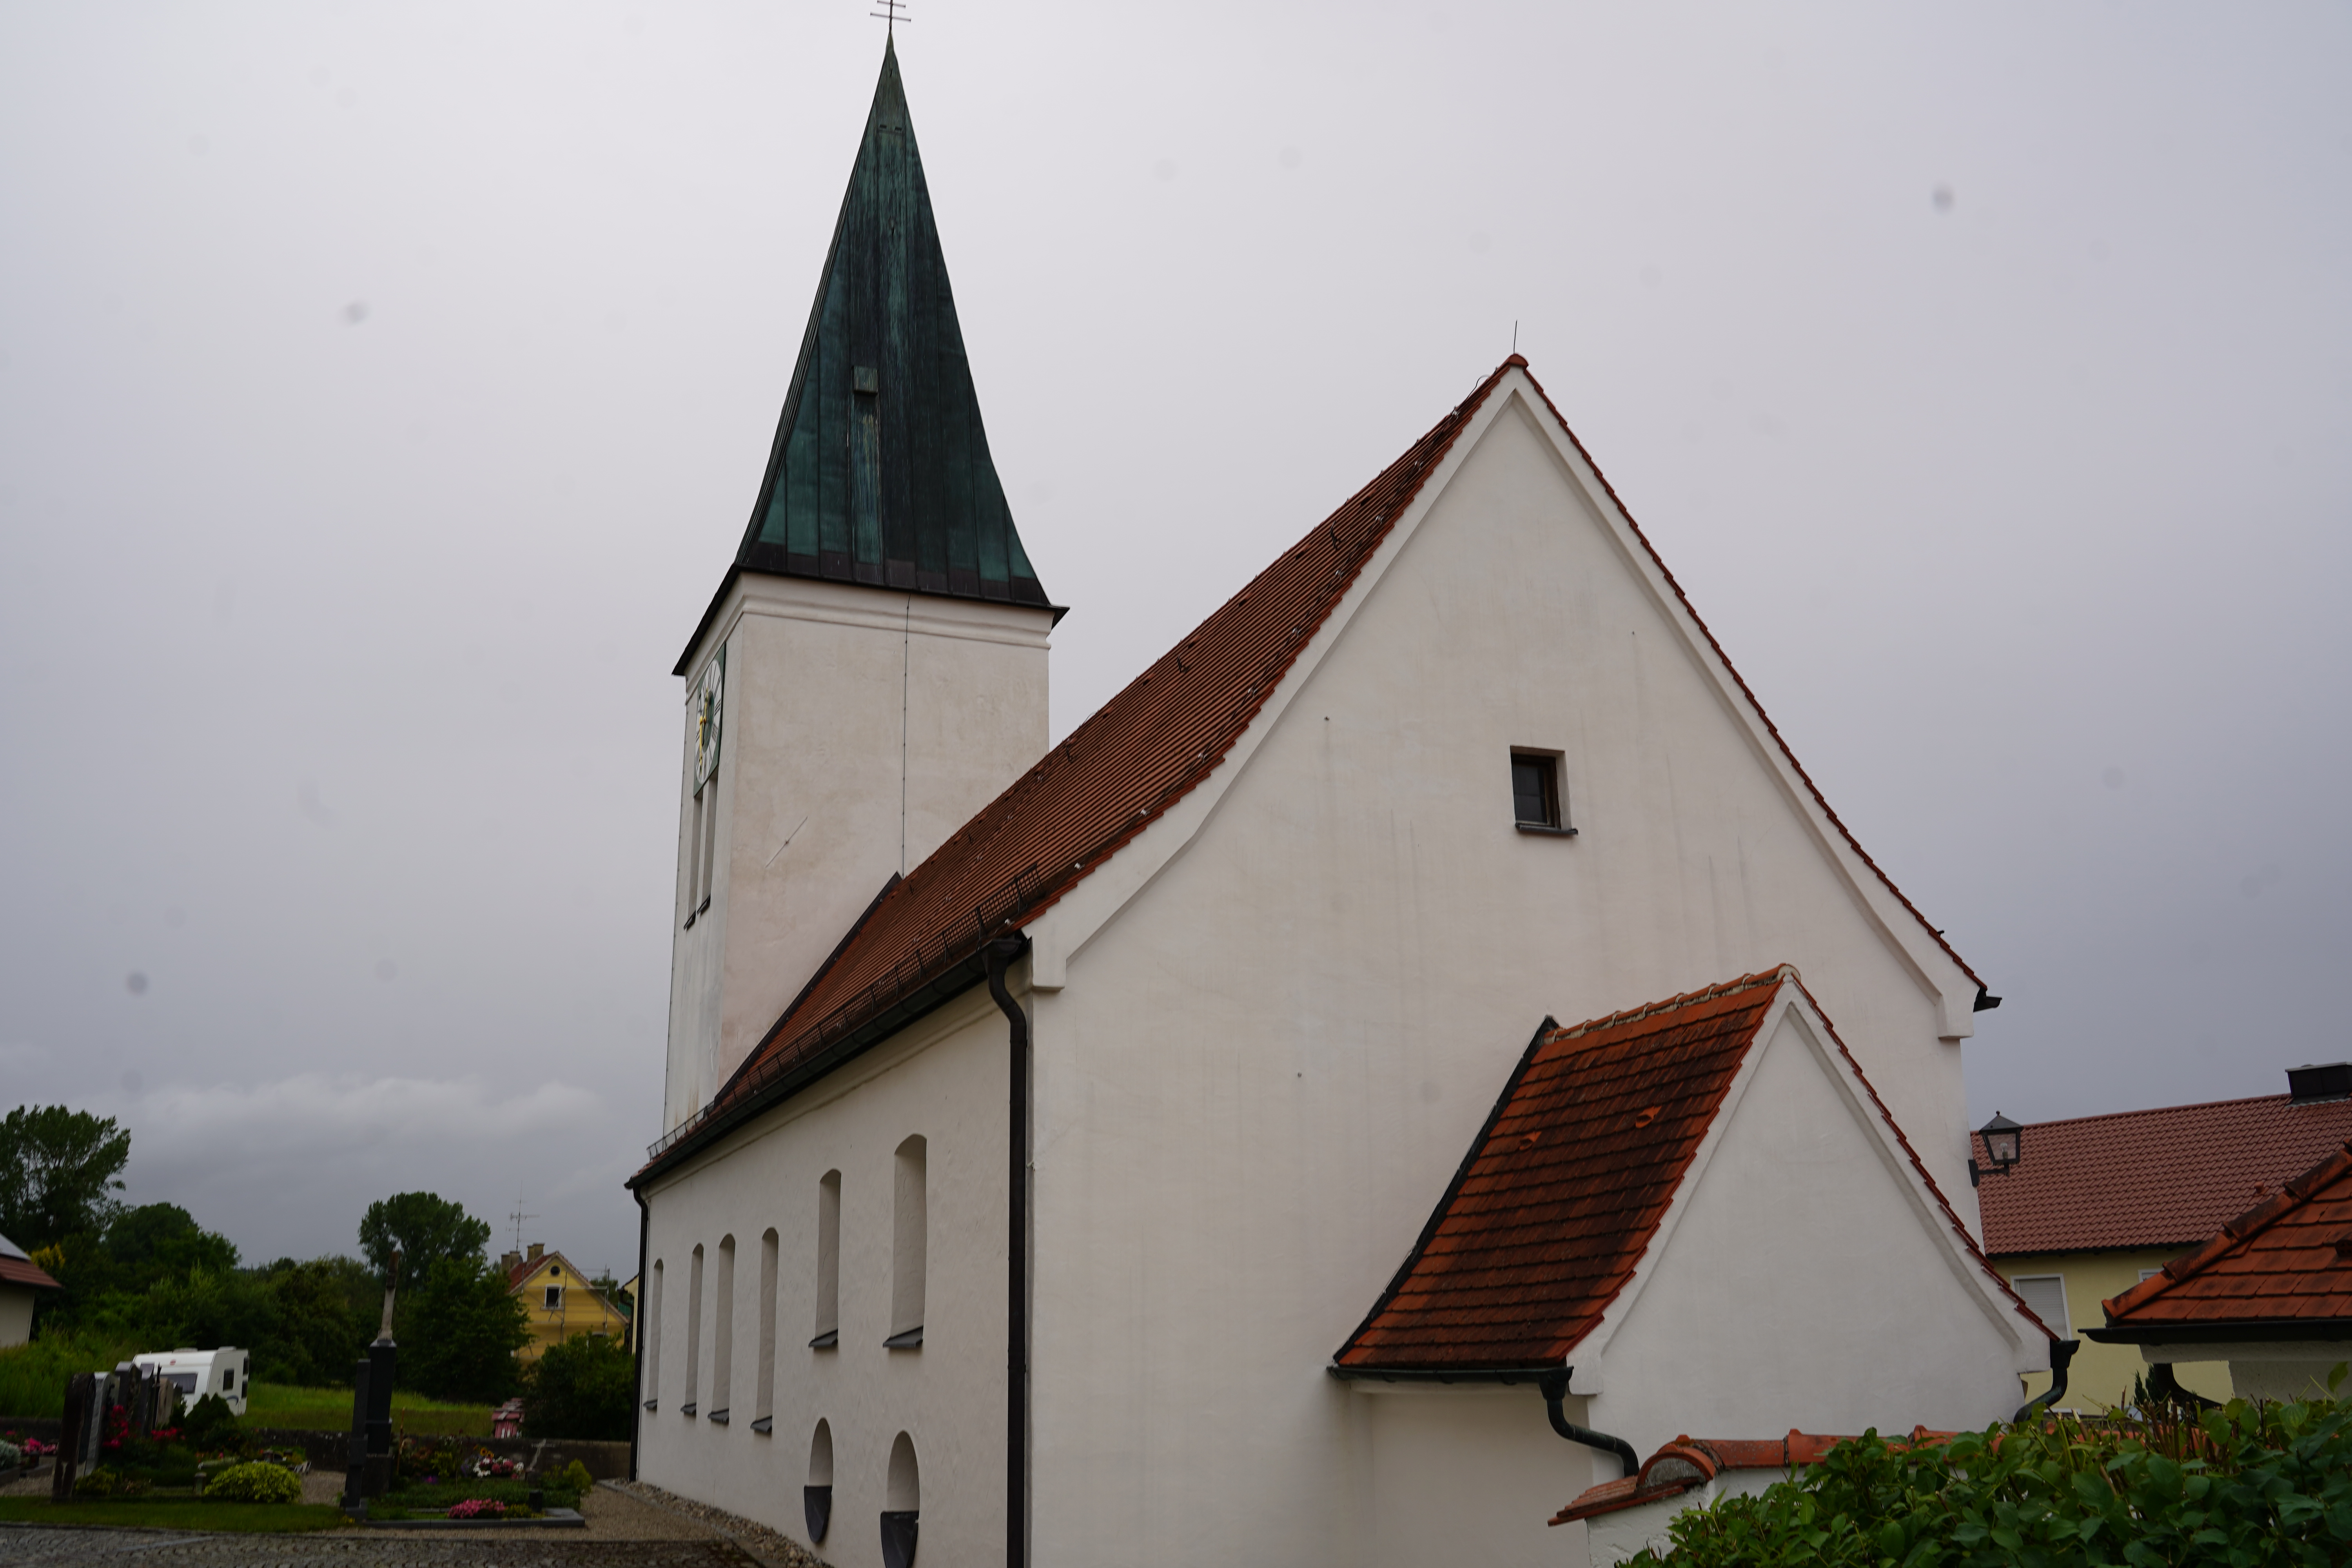 Pfarrkirche Mariä Himmelfahrt